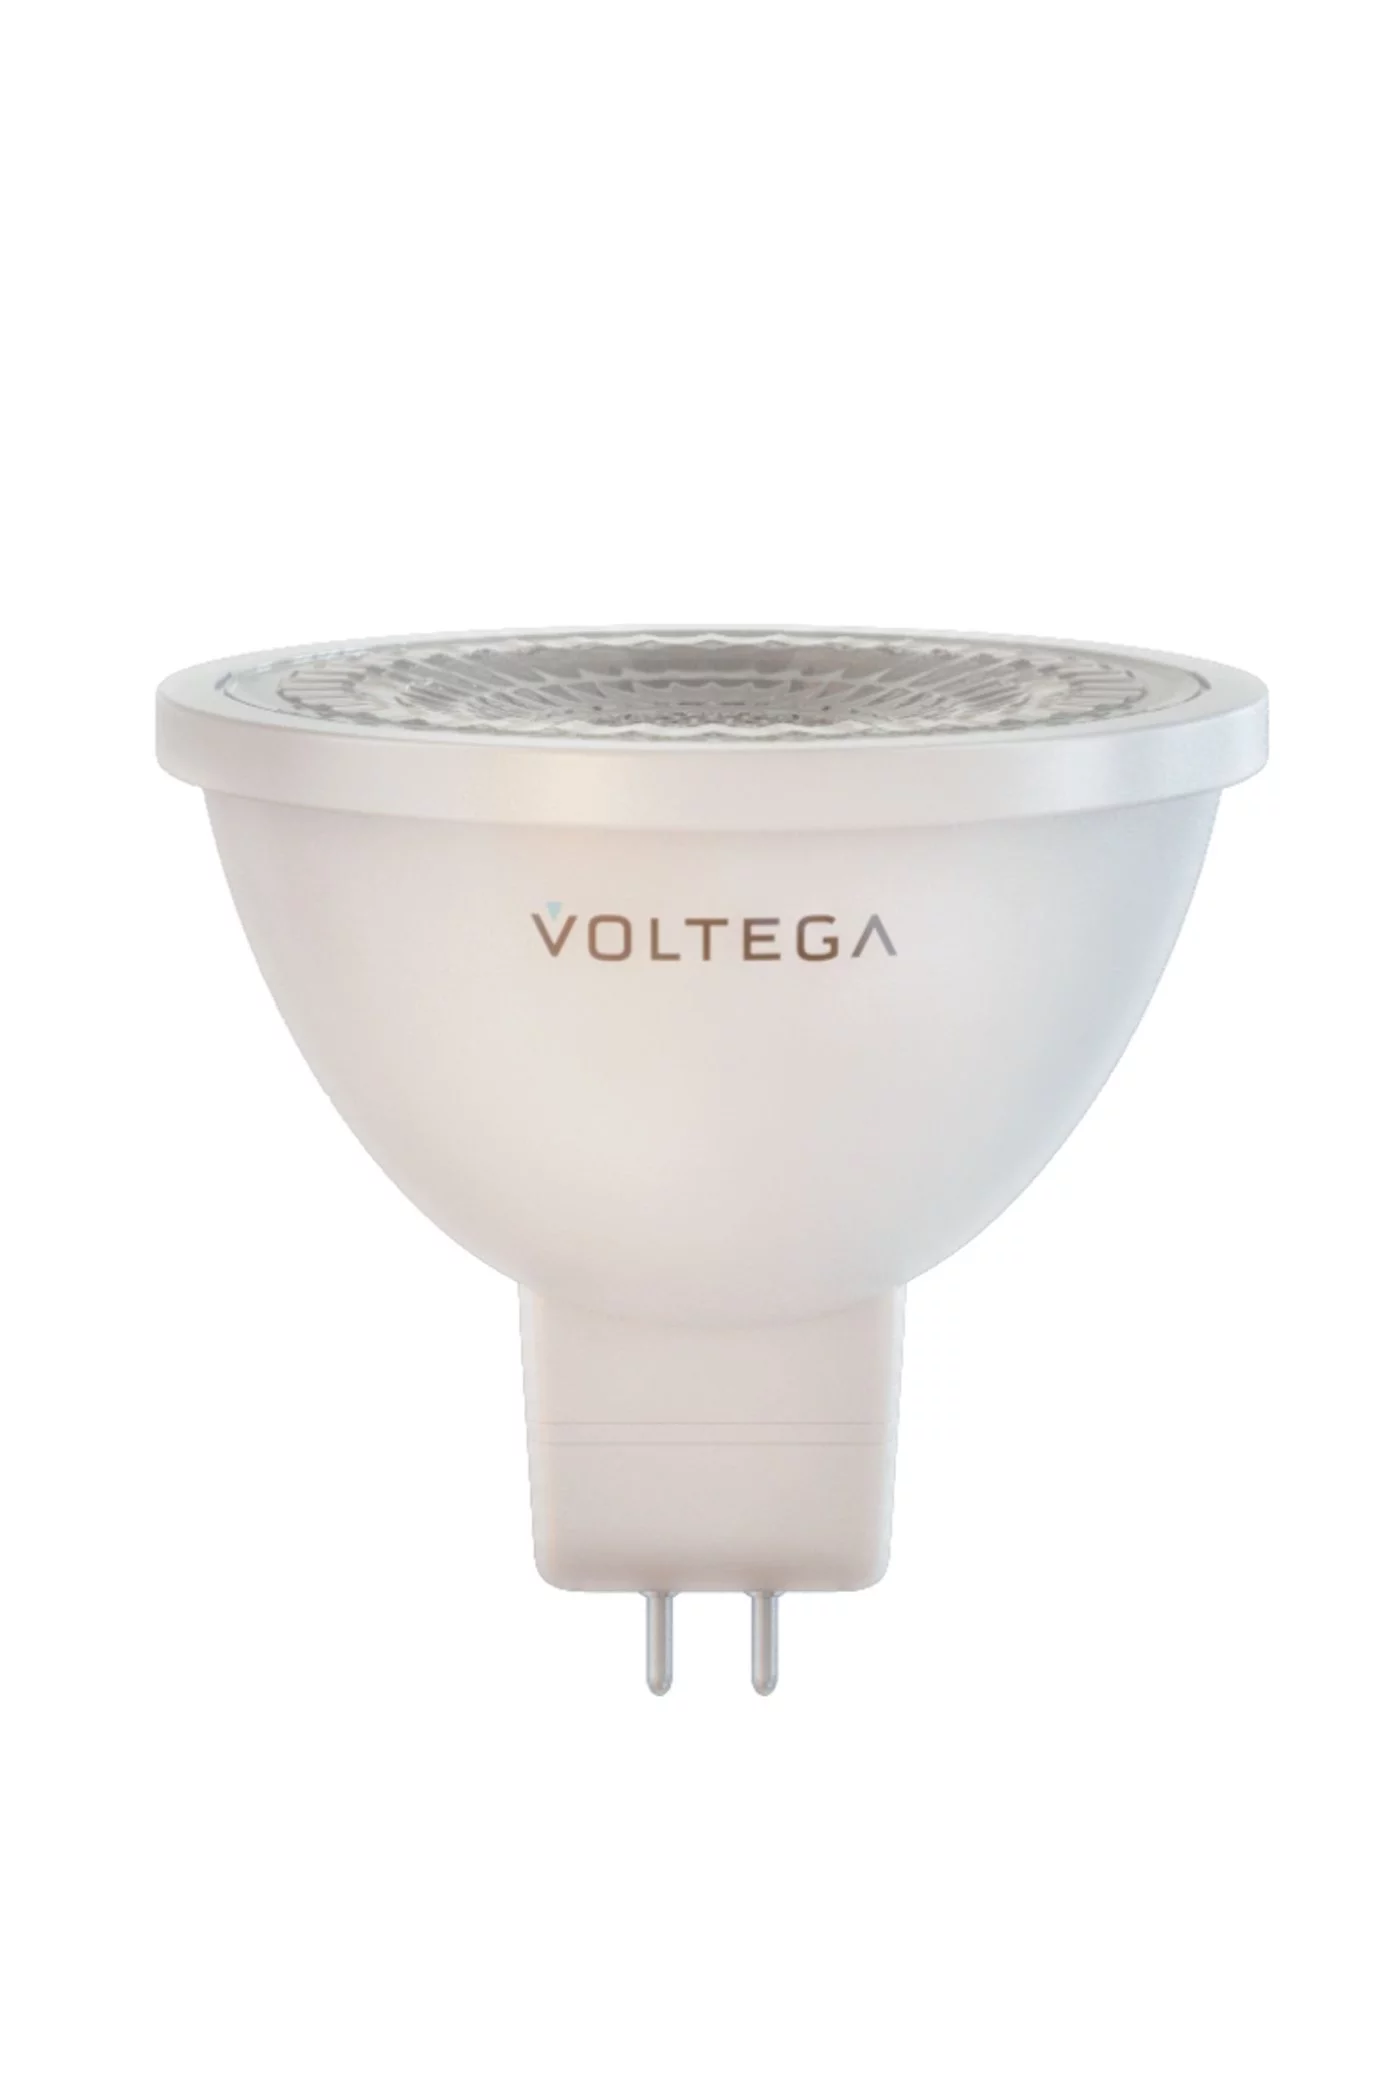   
                        
                        Лампа VOLTEGA  17022    
                        .  
                                                                                                Материал: Пластик.                          фото 1